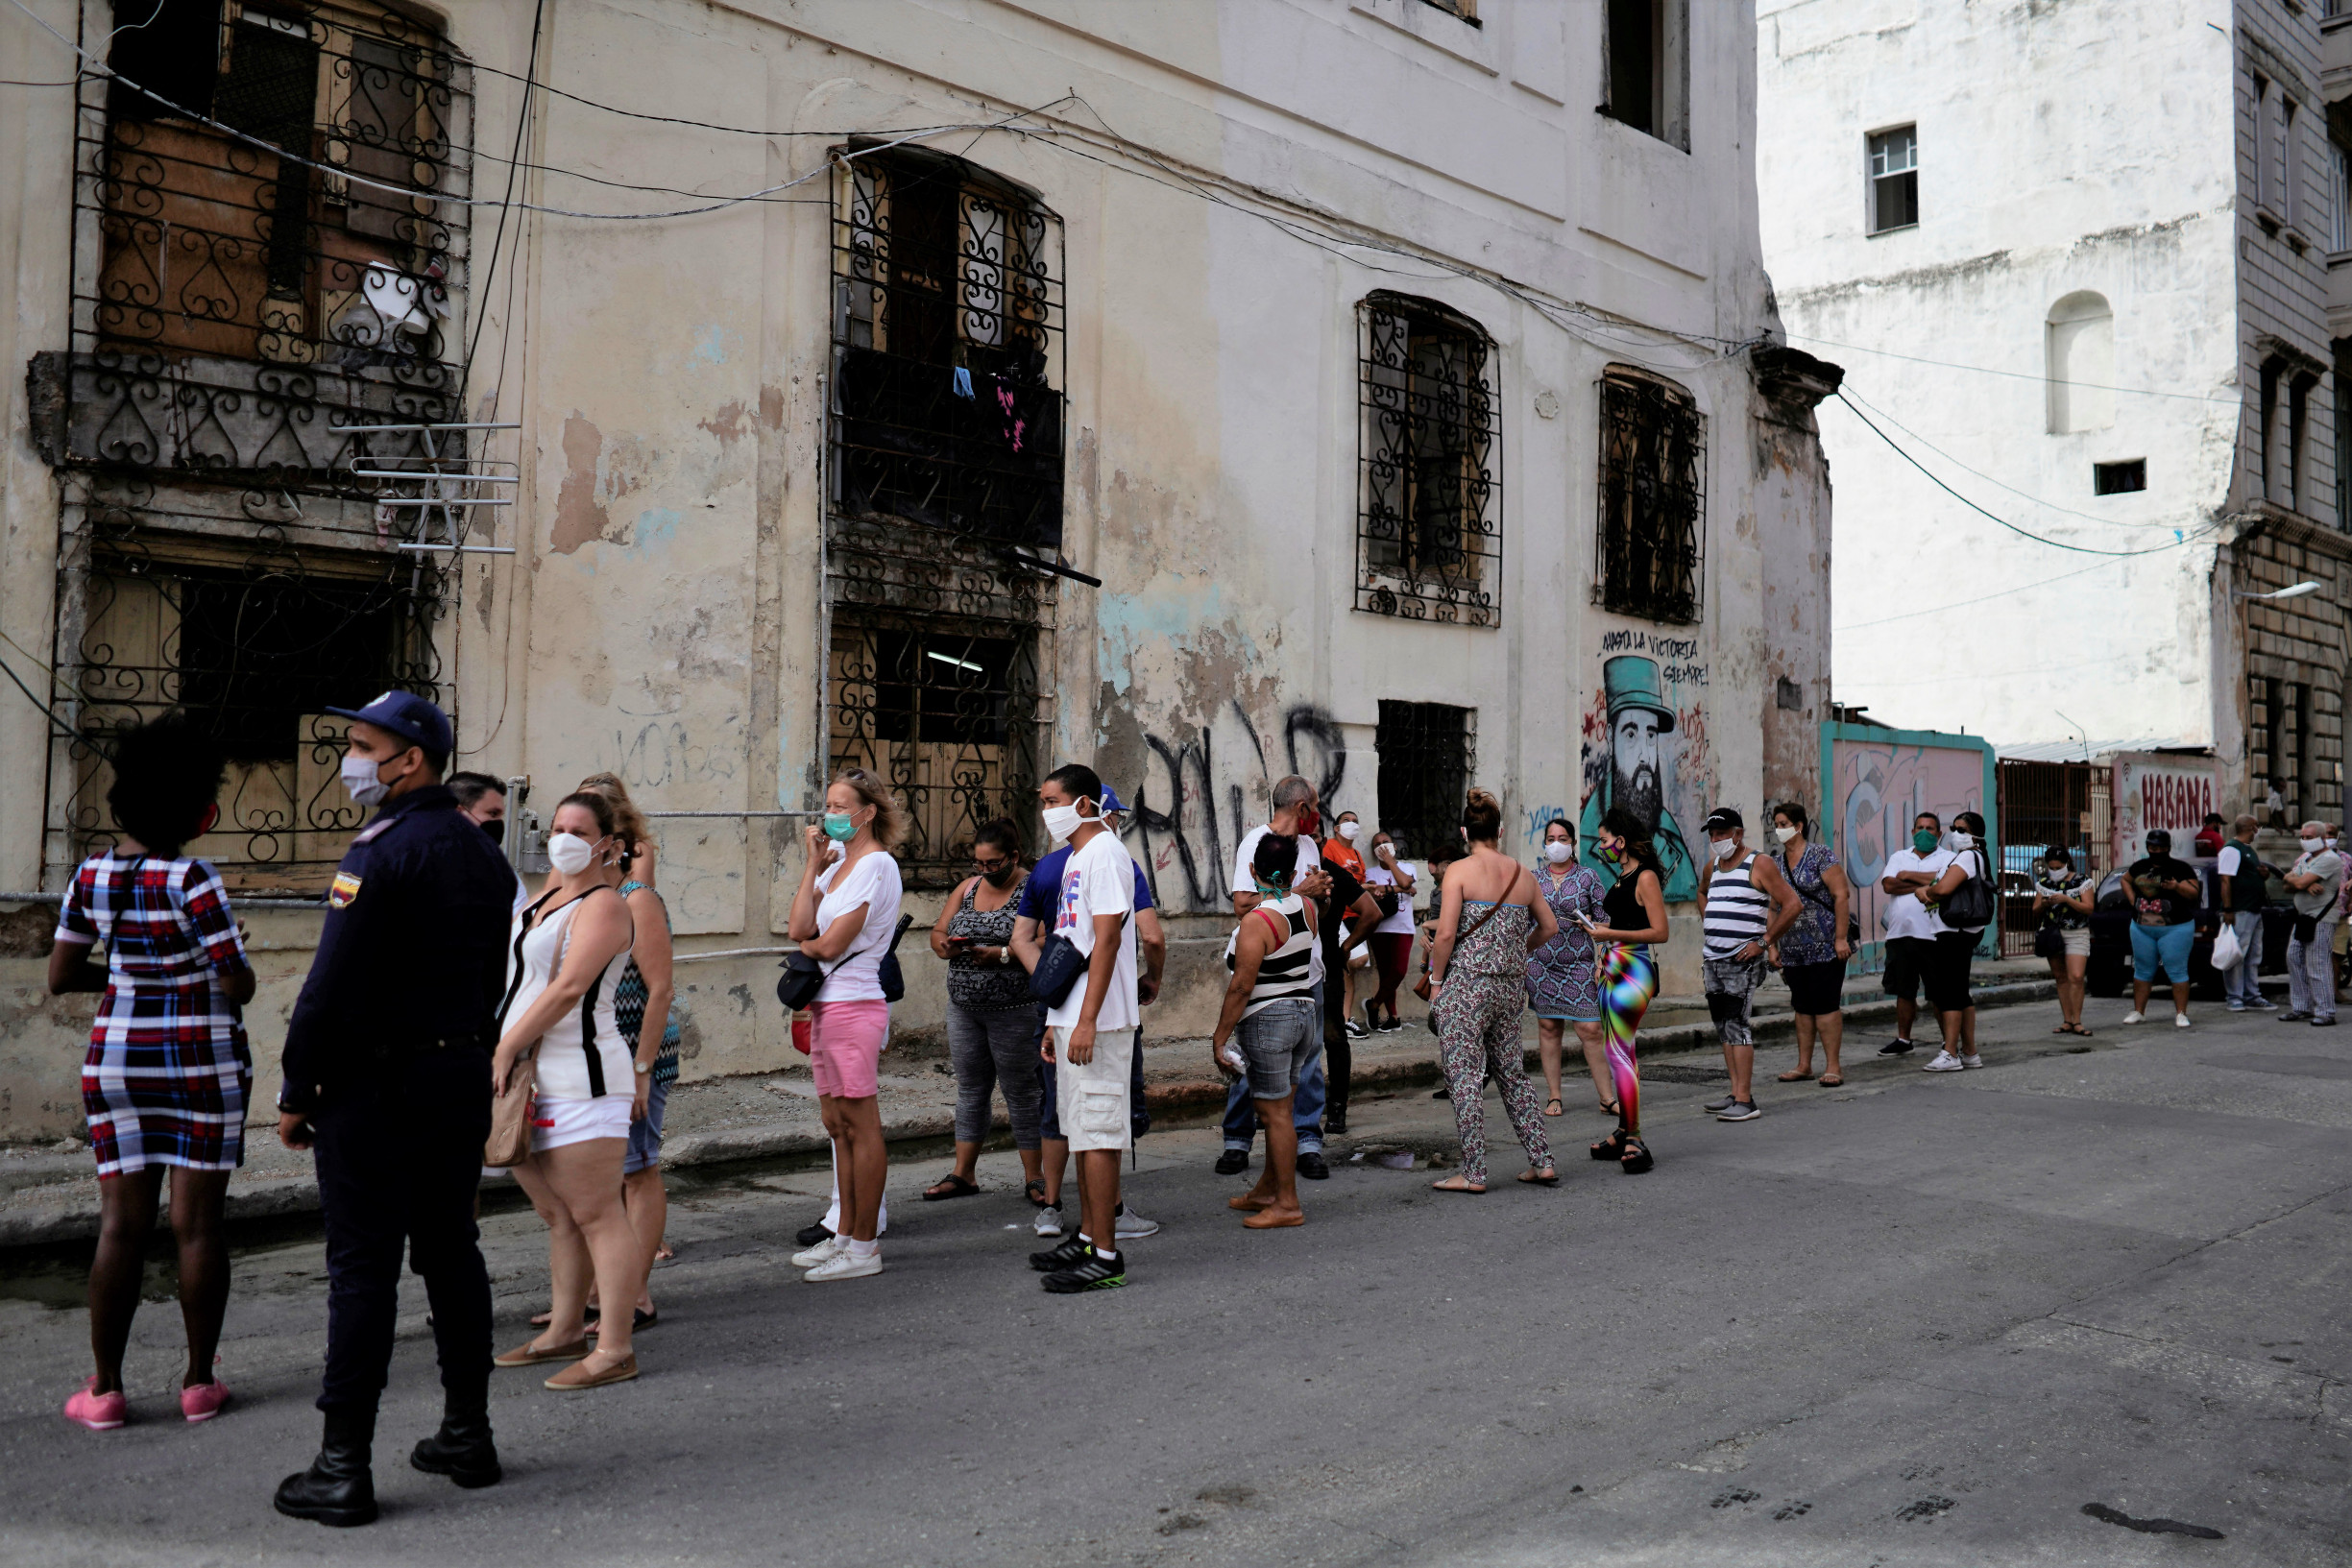 Znalec Kuby po masových nepokojích: Castrovská politika pokračuje i bez bratří Castrů